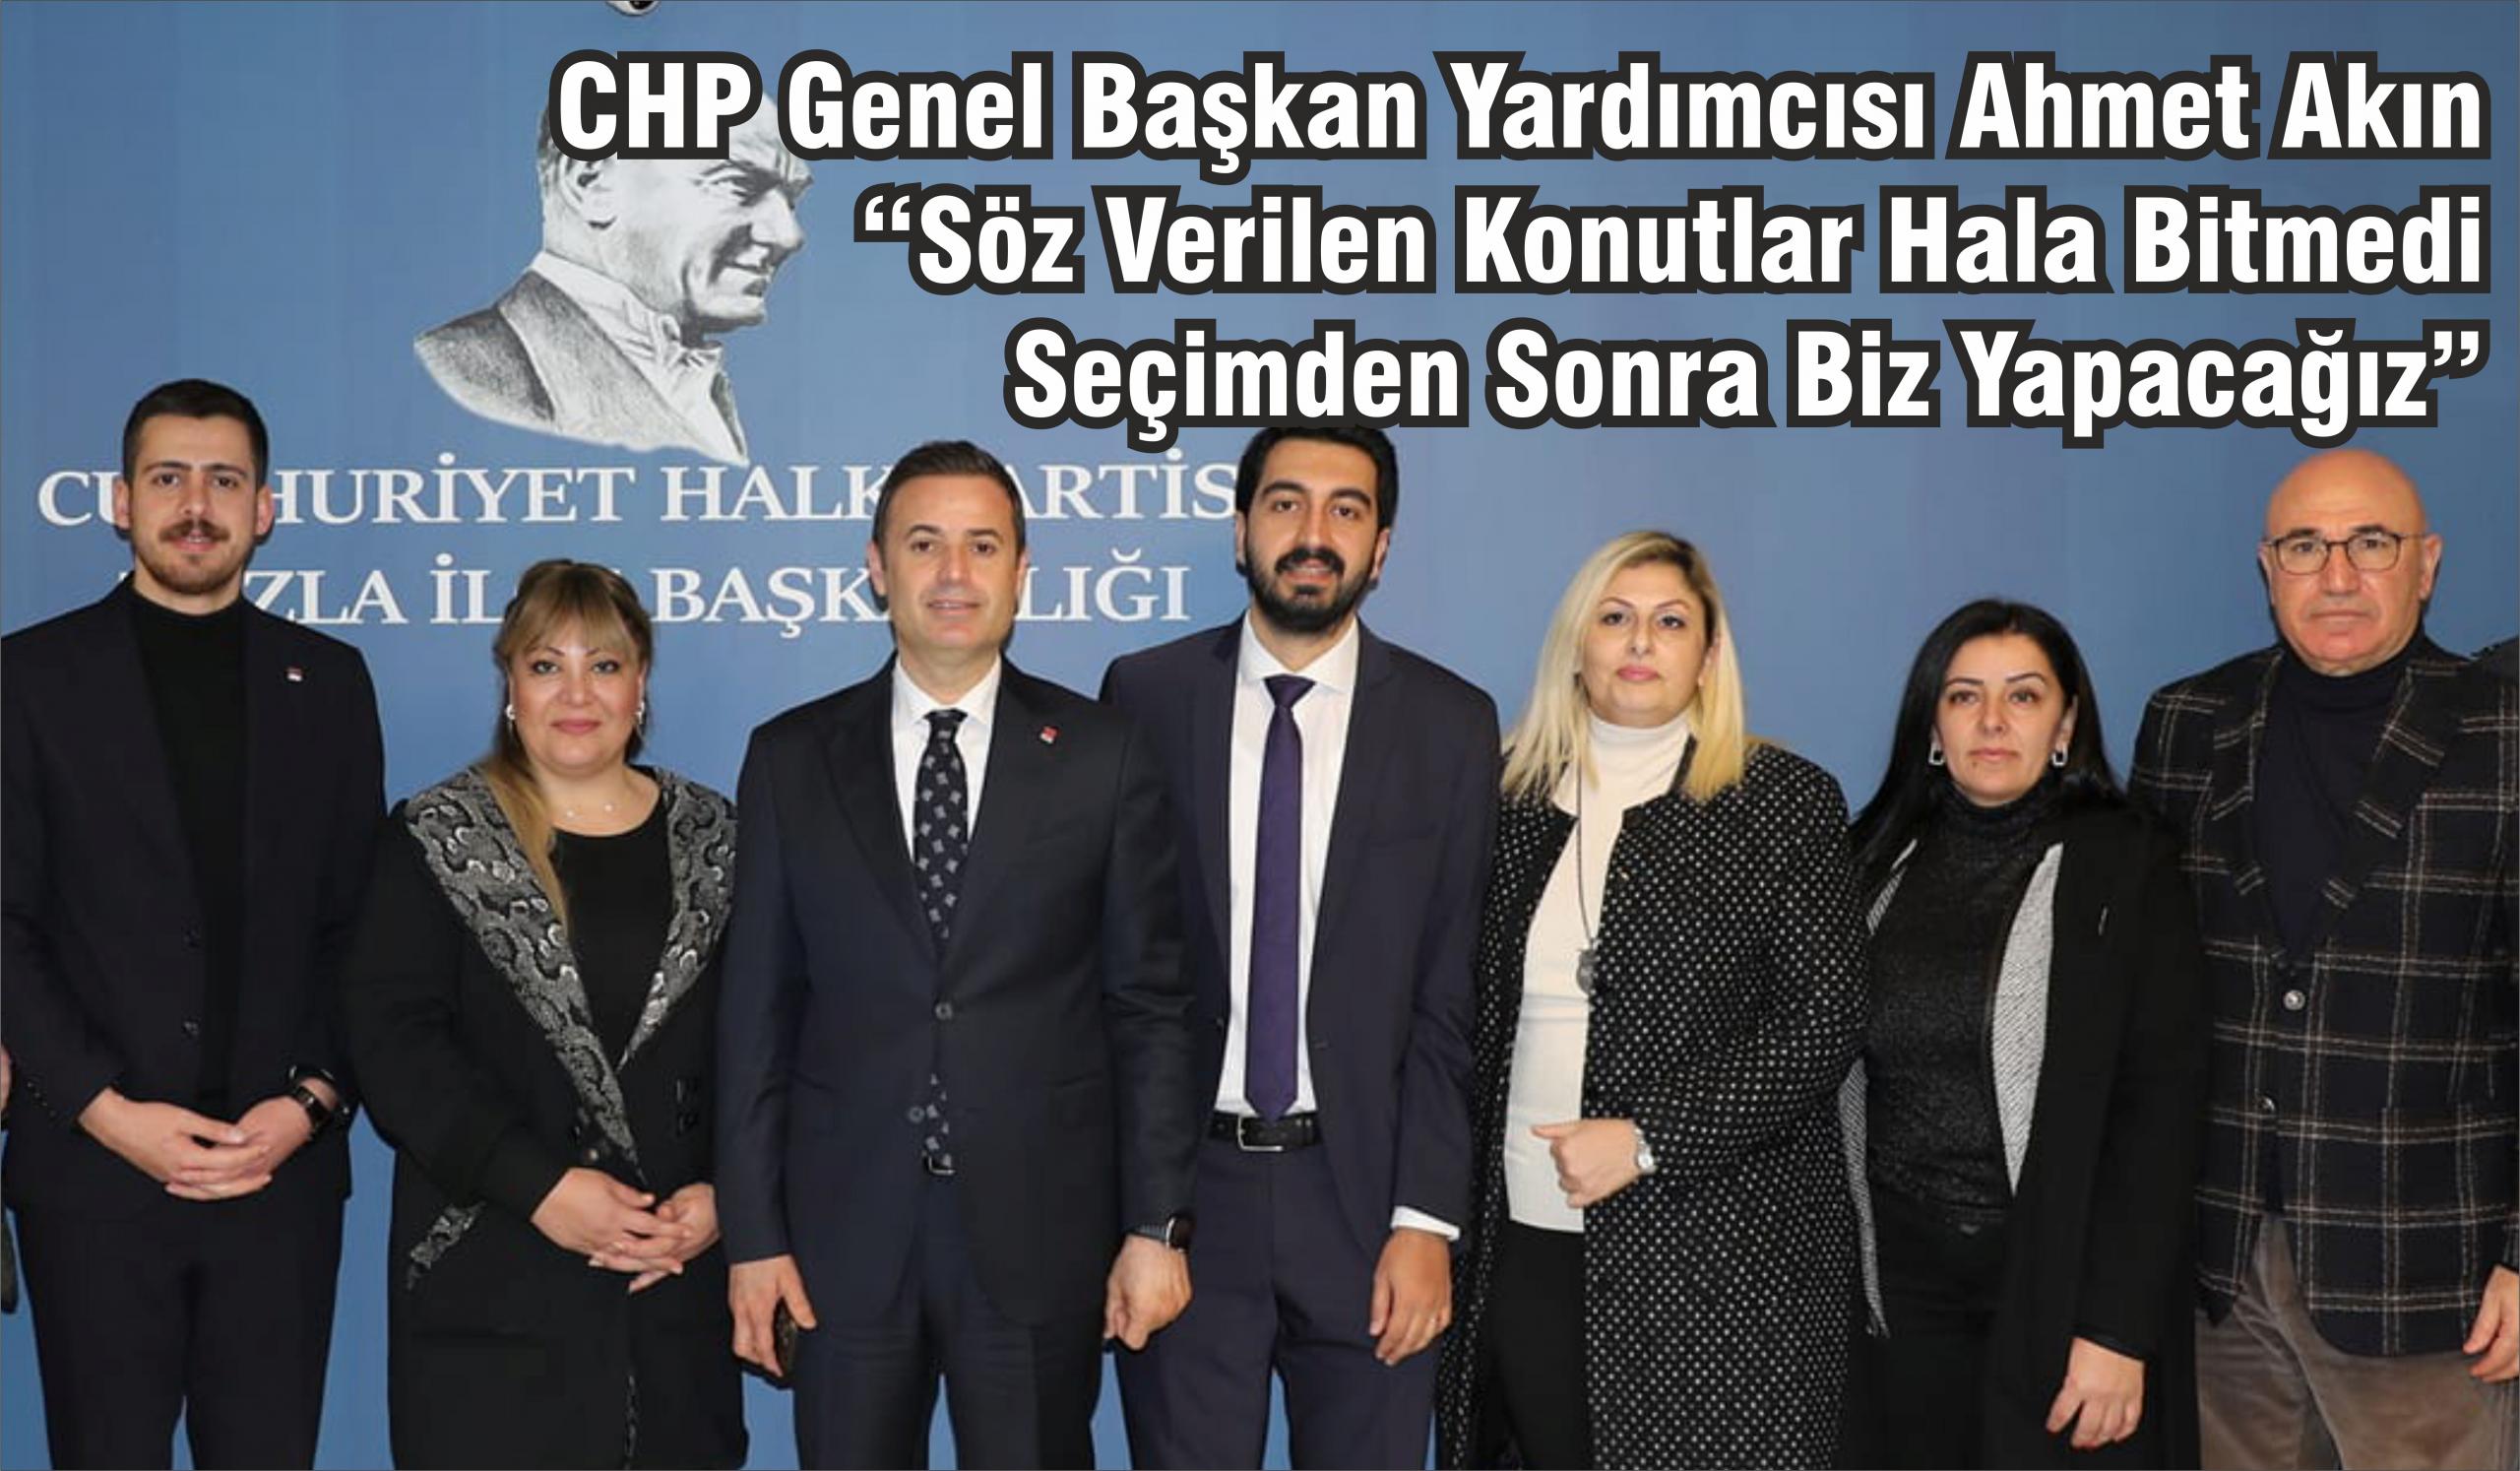 CHP Genel Başkan Yardımcısı Ahmet Akın “Söz Verilen Konutlar Hala Bitmedi Seçimden Sonra Biz Yapacağız”